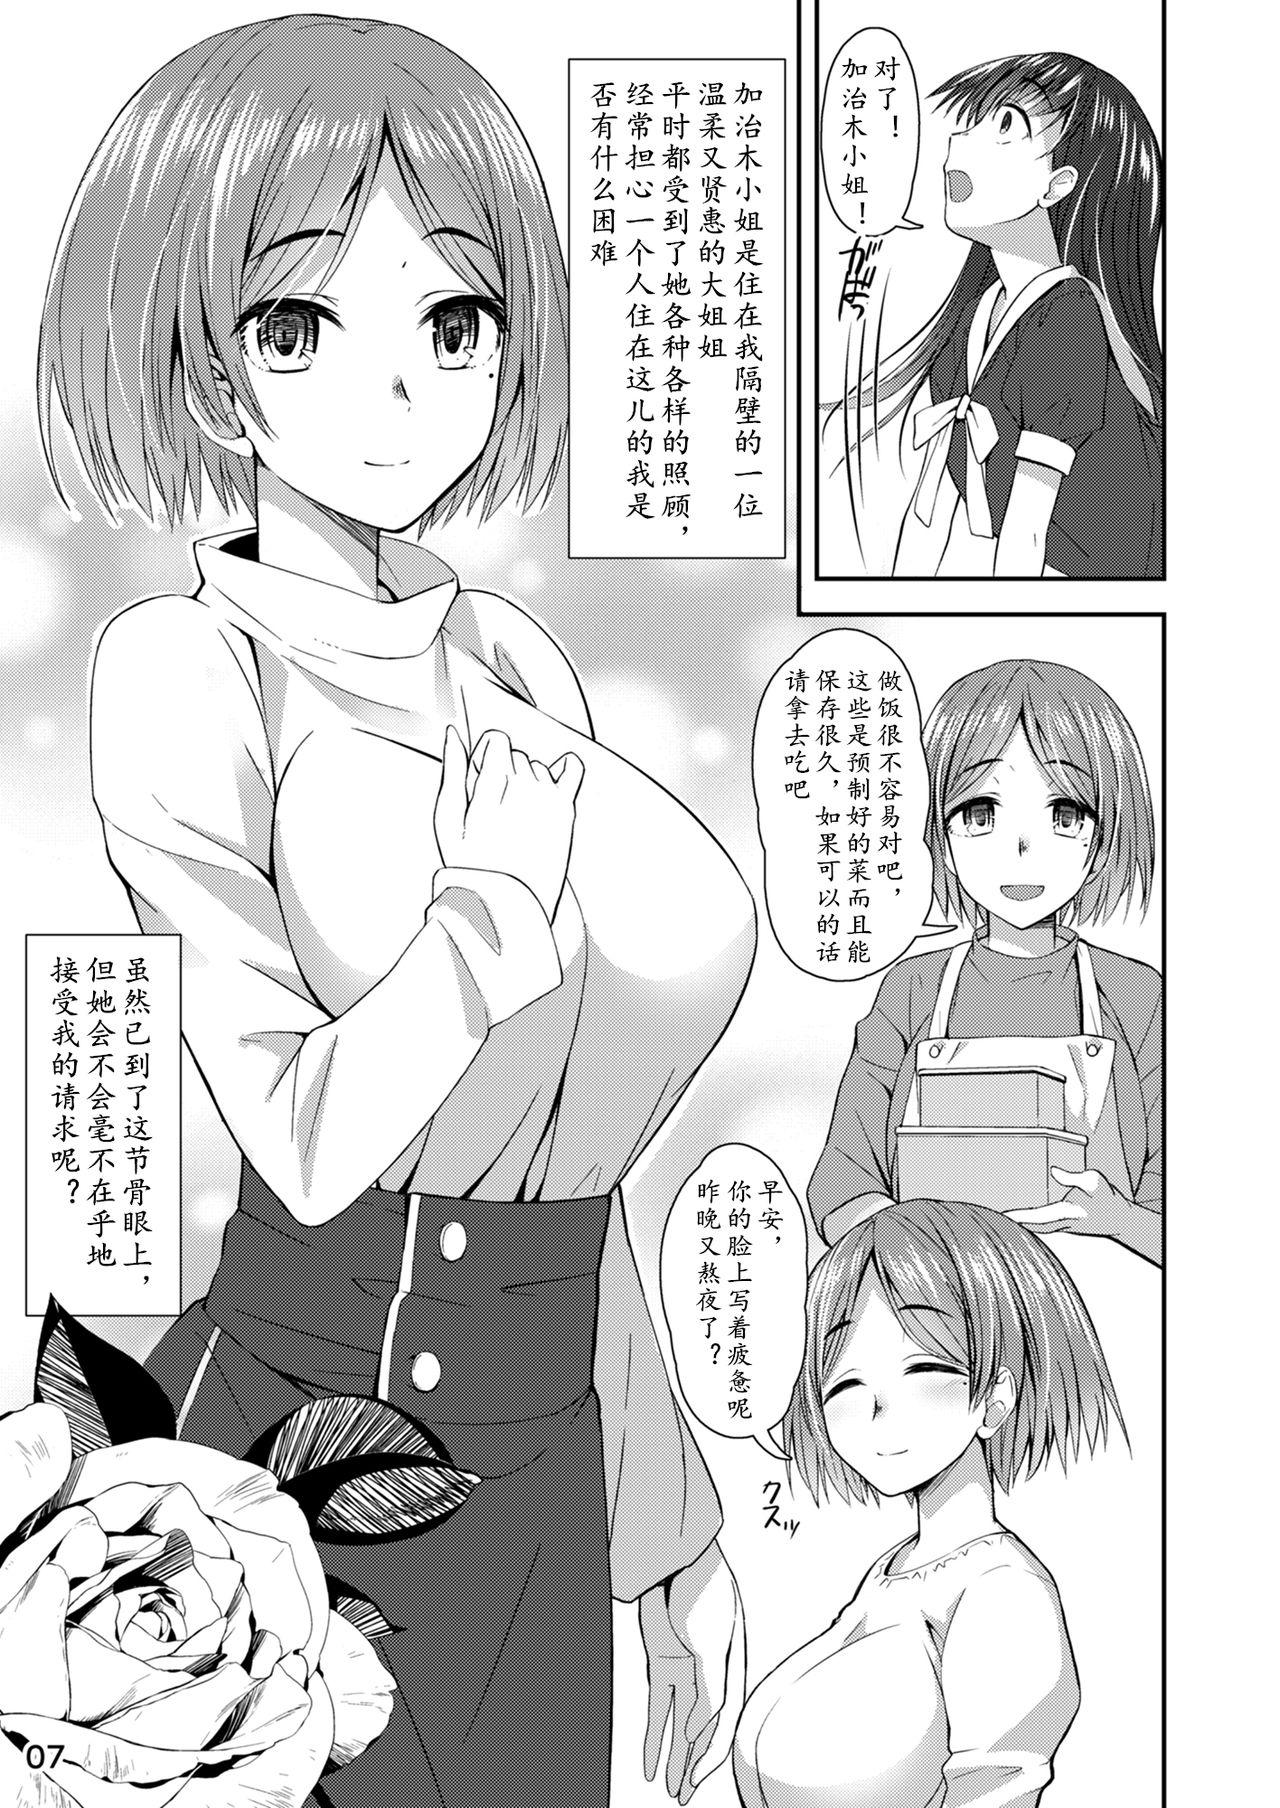 Orgia Shuumatsu Fudeoroshi Girl - Original Tinder - Page 7